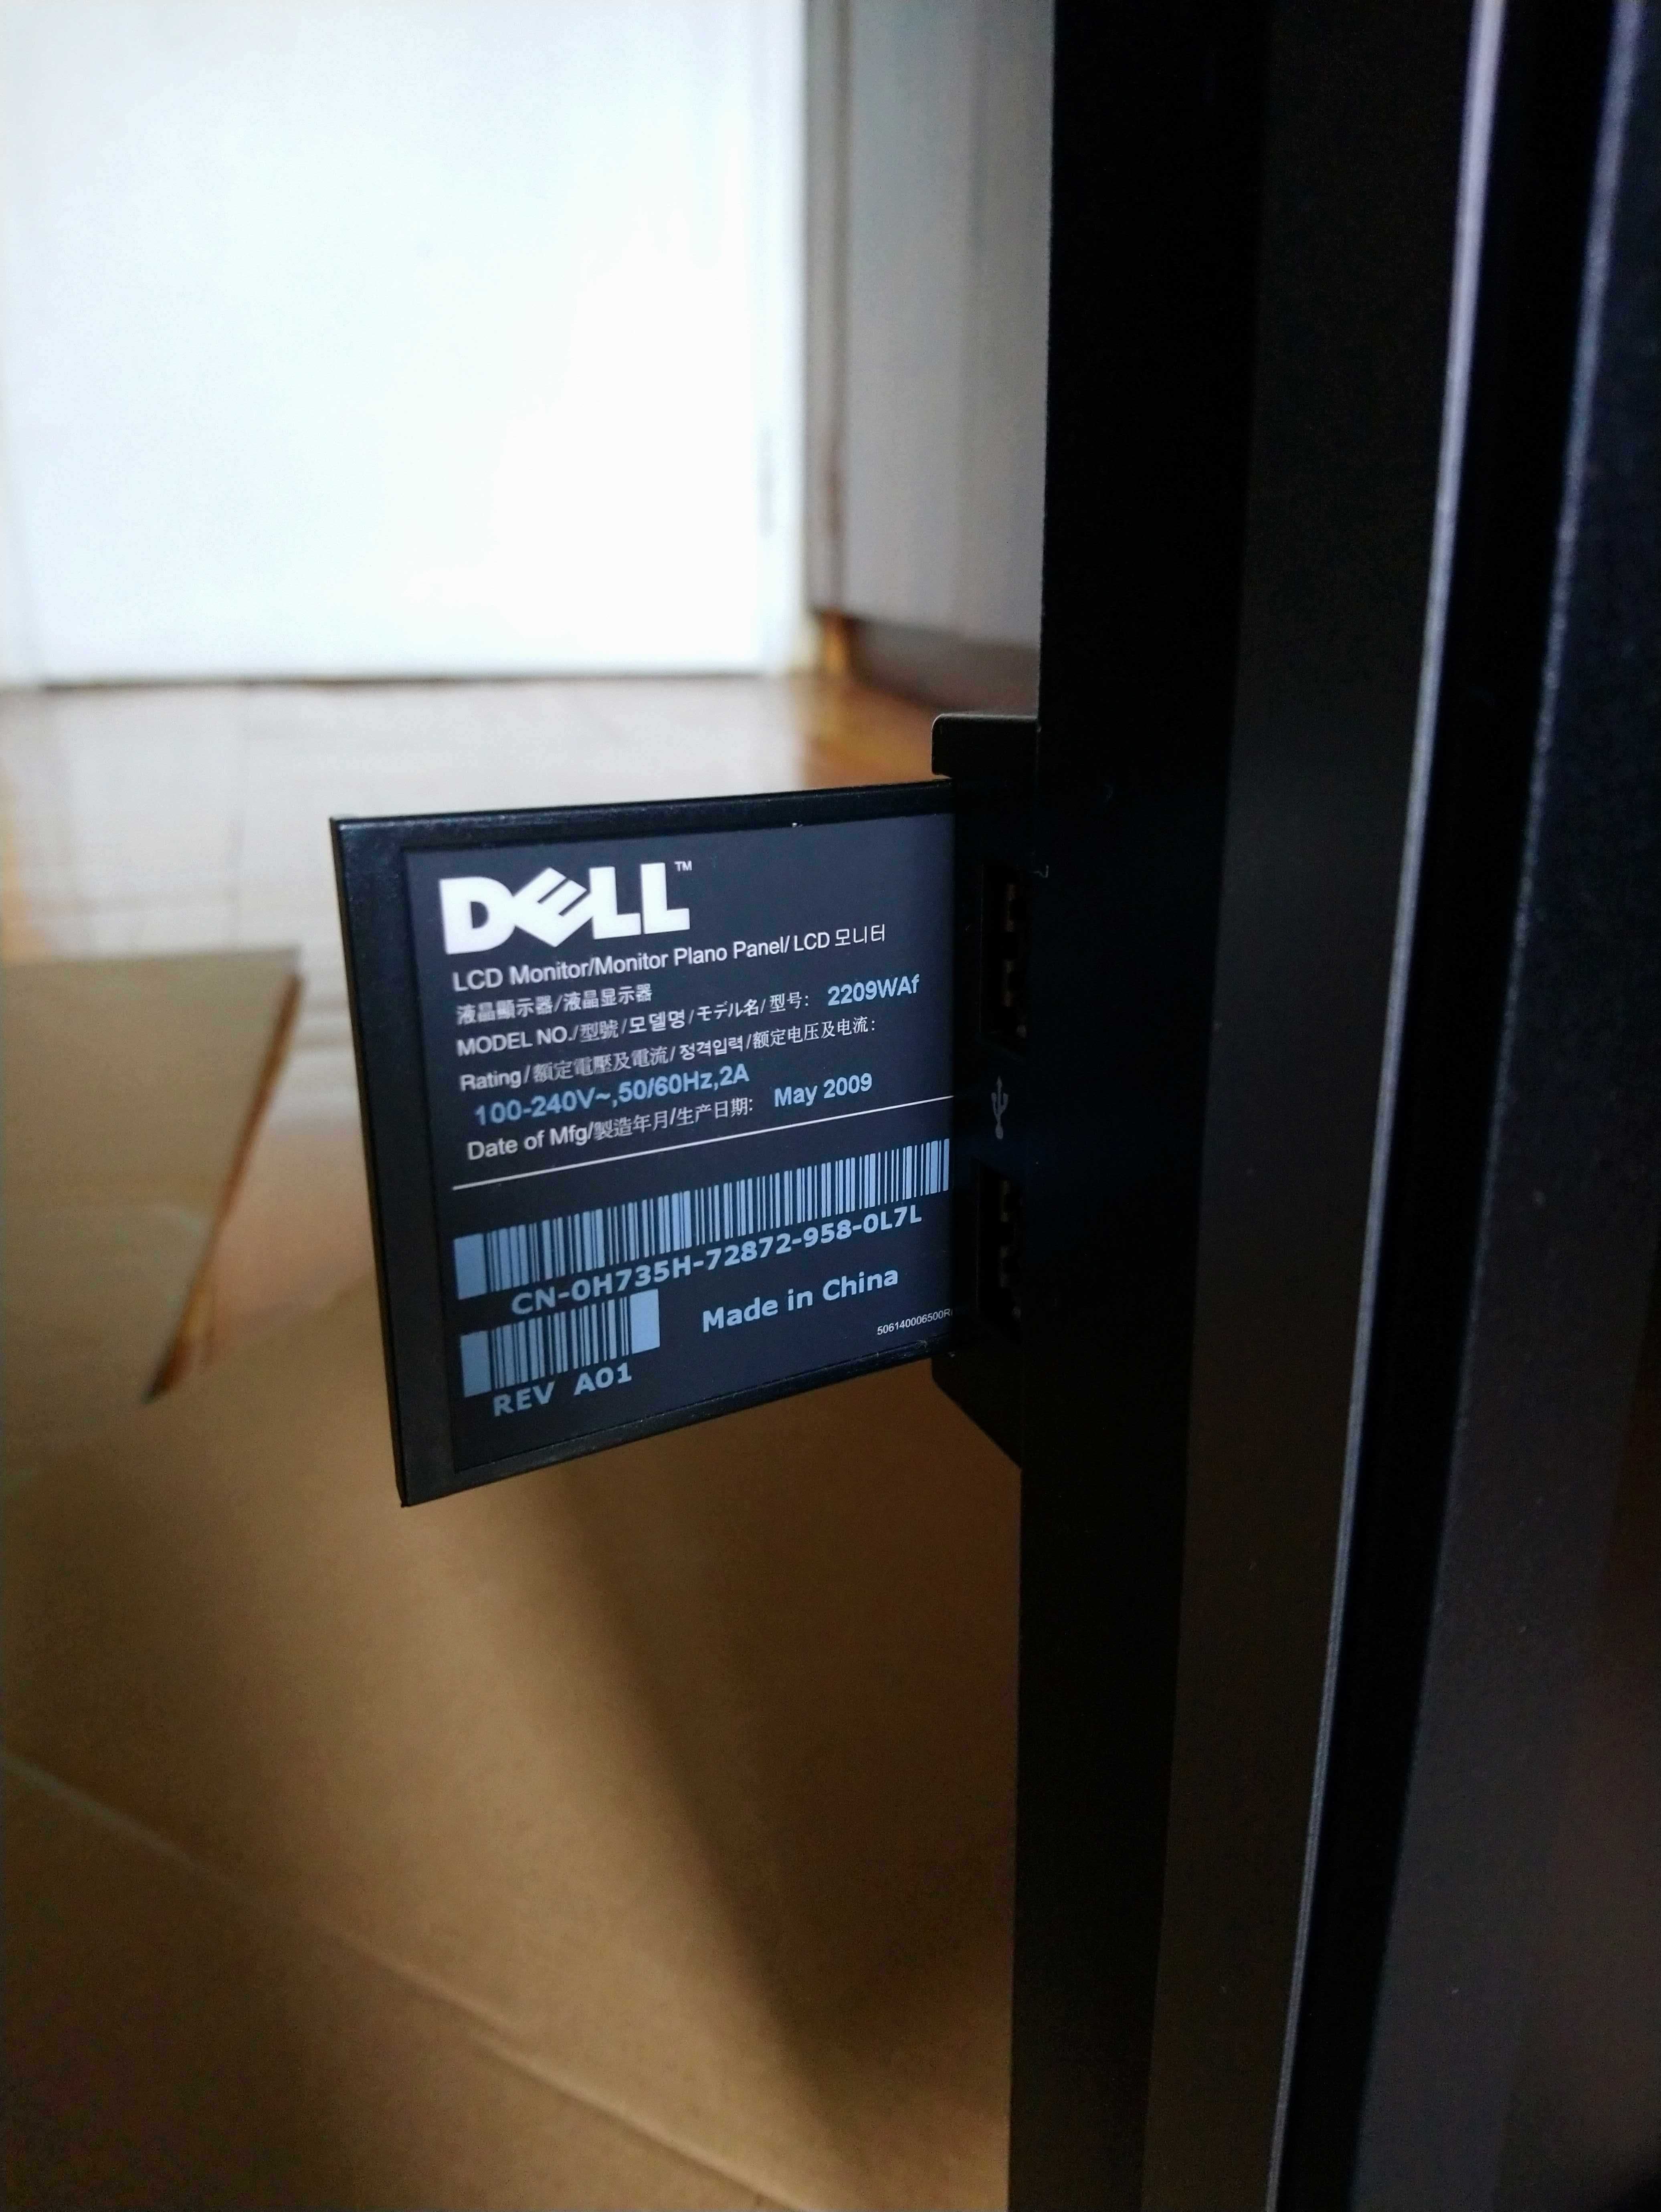 монитор Dell 2209 WAf, IPS матрица